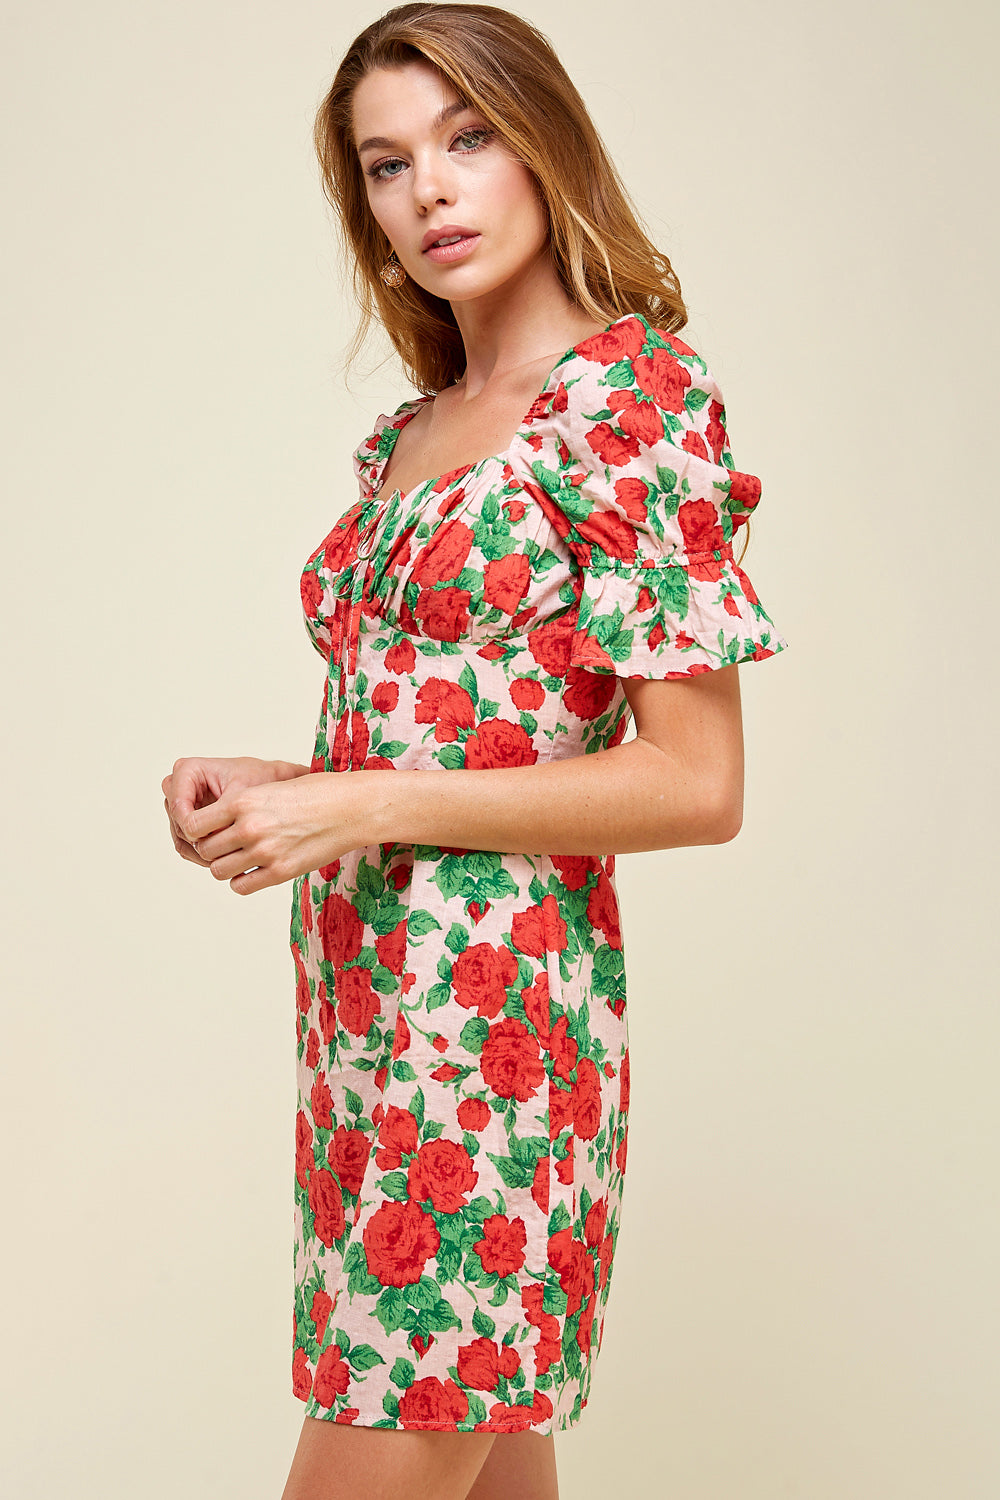 [$5/piece] Floral Sweet Heart Dress